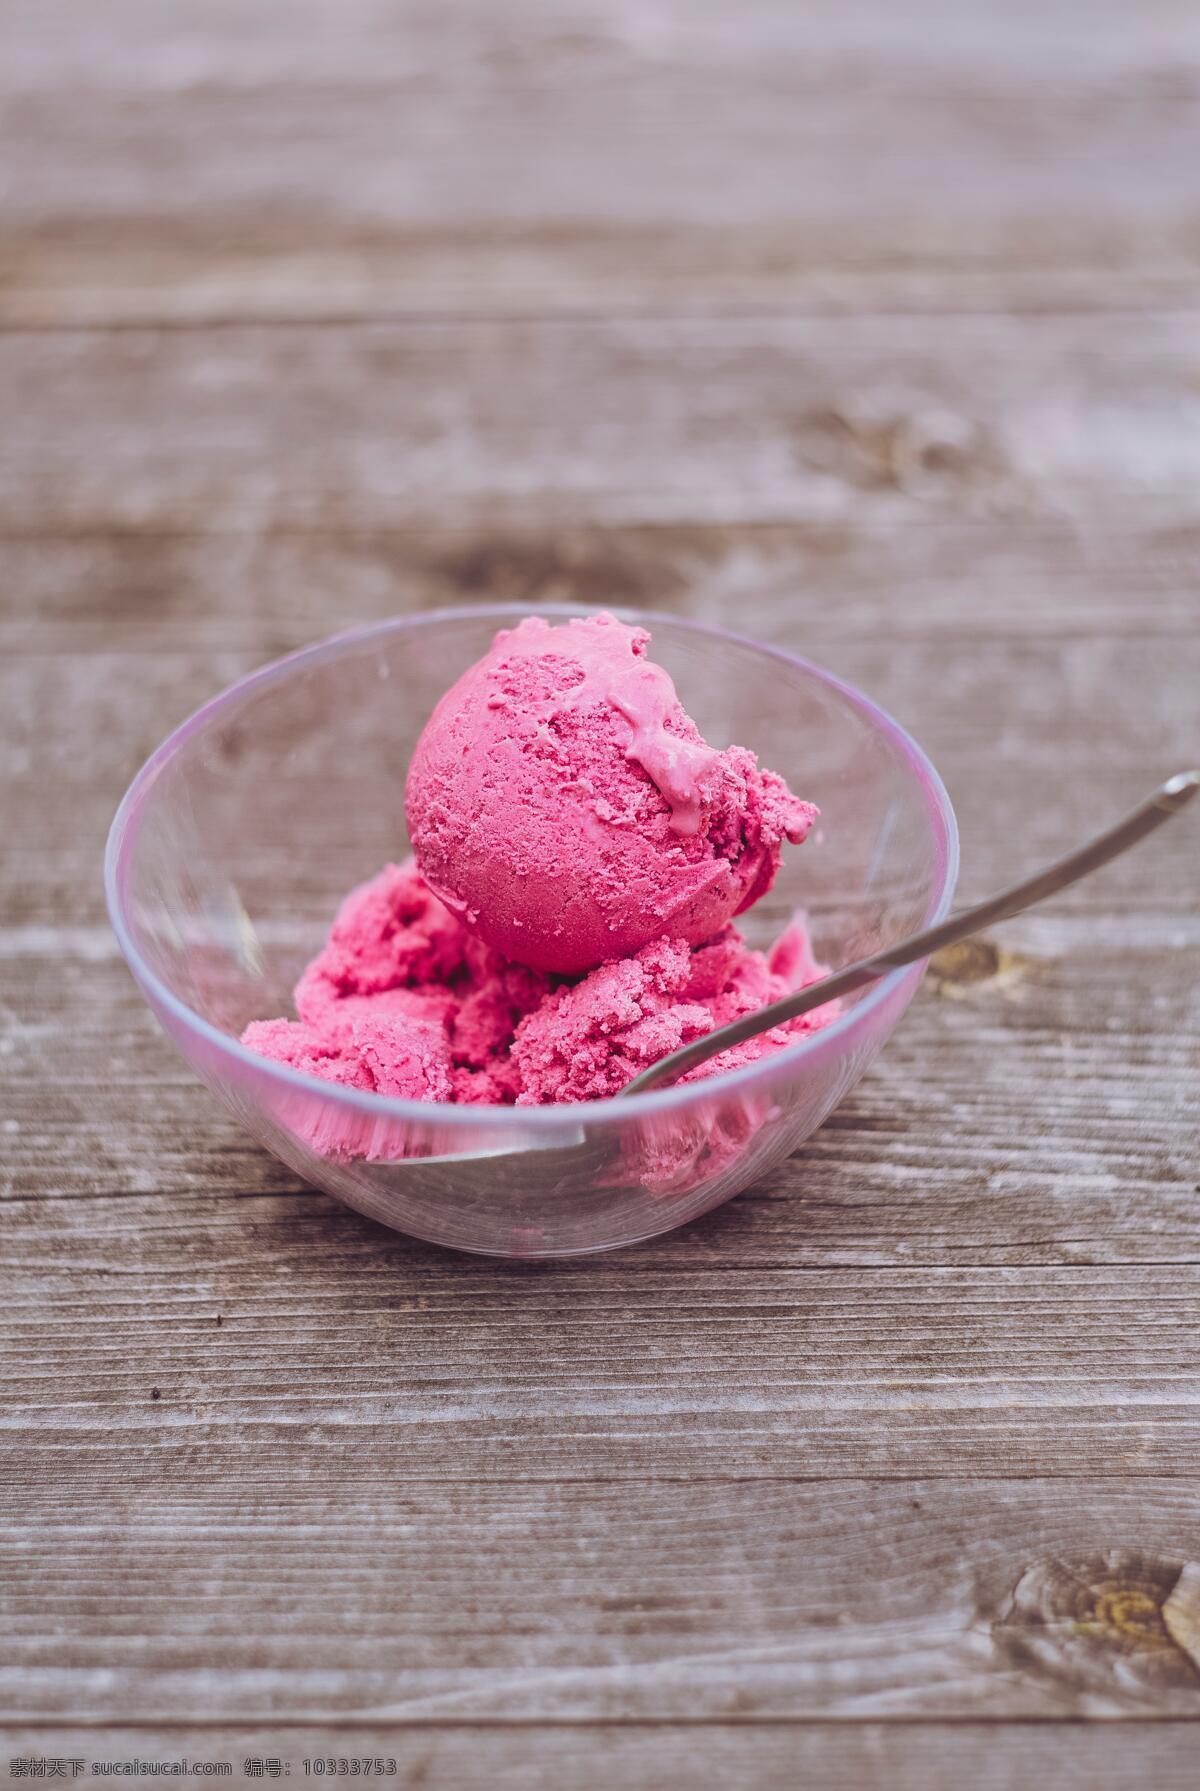 草莓冰淇淋 草莓 冰淇淋 一勺 勺子 粉色 紫色 紫红色 草莓味 水果 水果冰淇淋 冰点 甜点 特写 高清 品质 精美 饭后甜点 餐饮美食 西餐美食